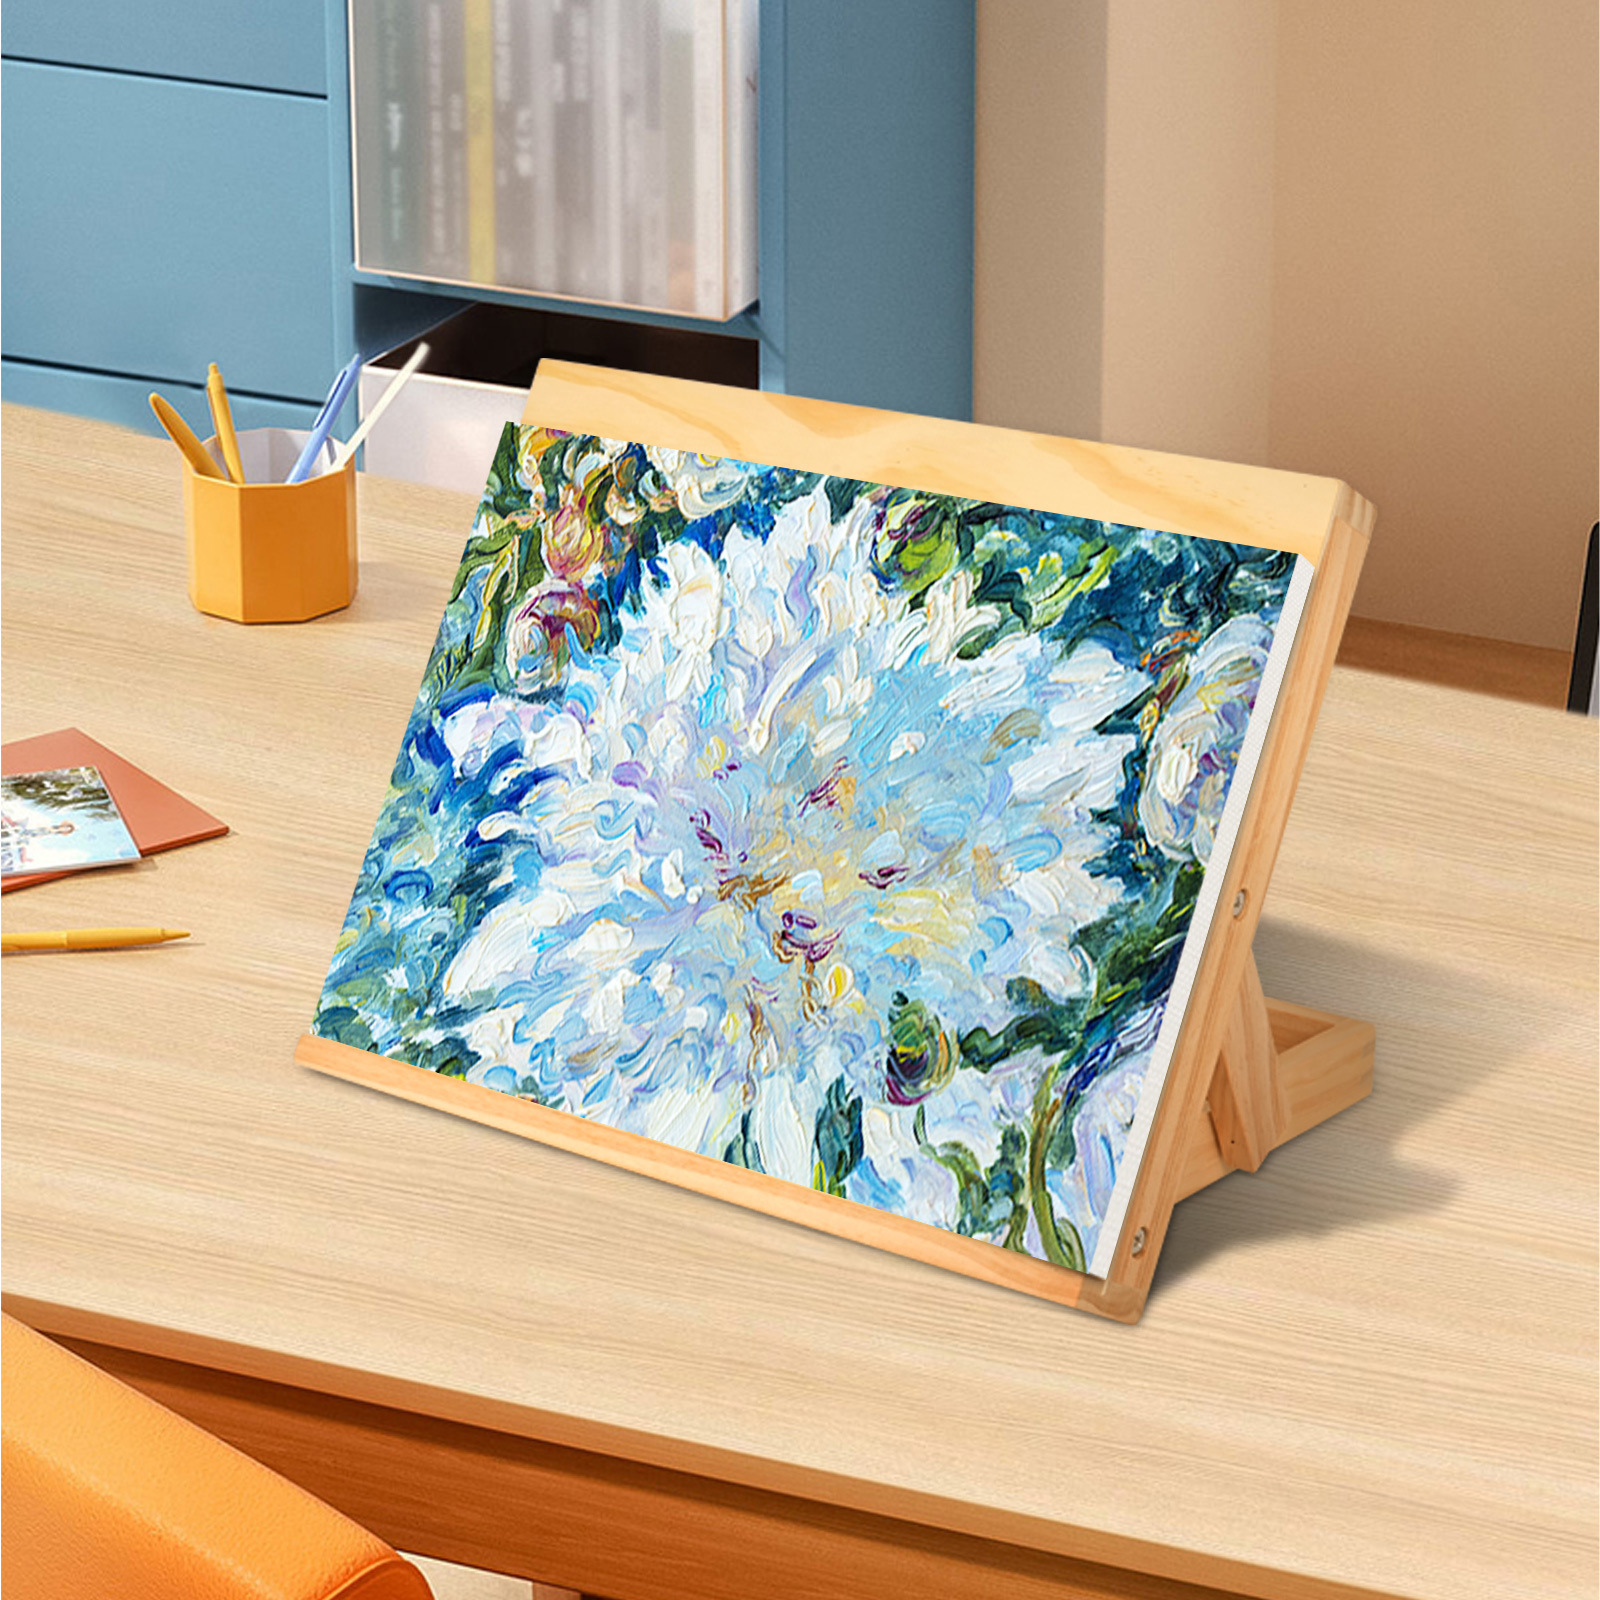 桌面画架折叠式可调节便携支架美术用品写生素描展示架